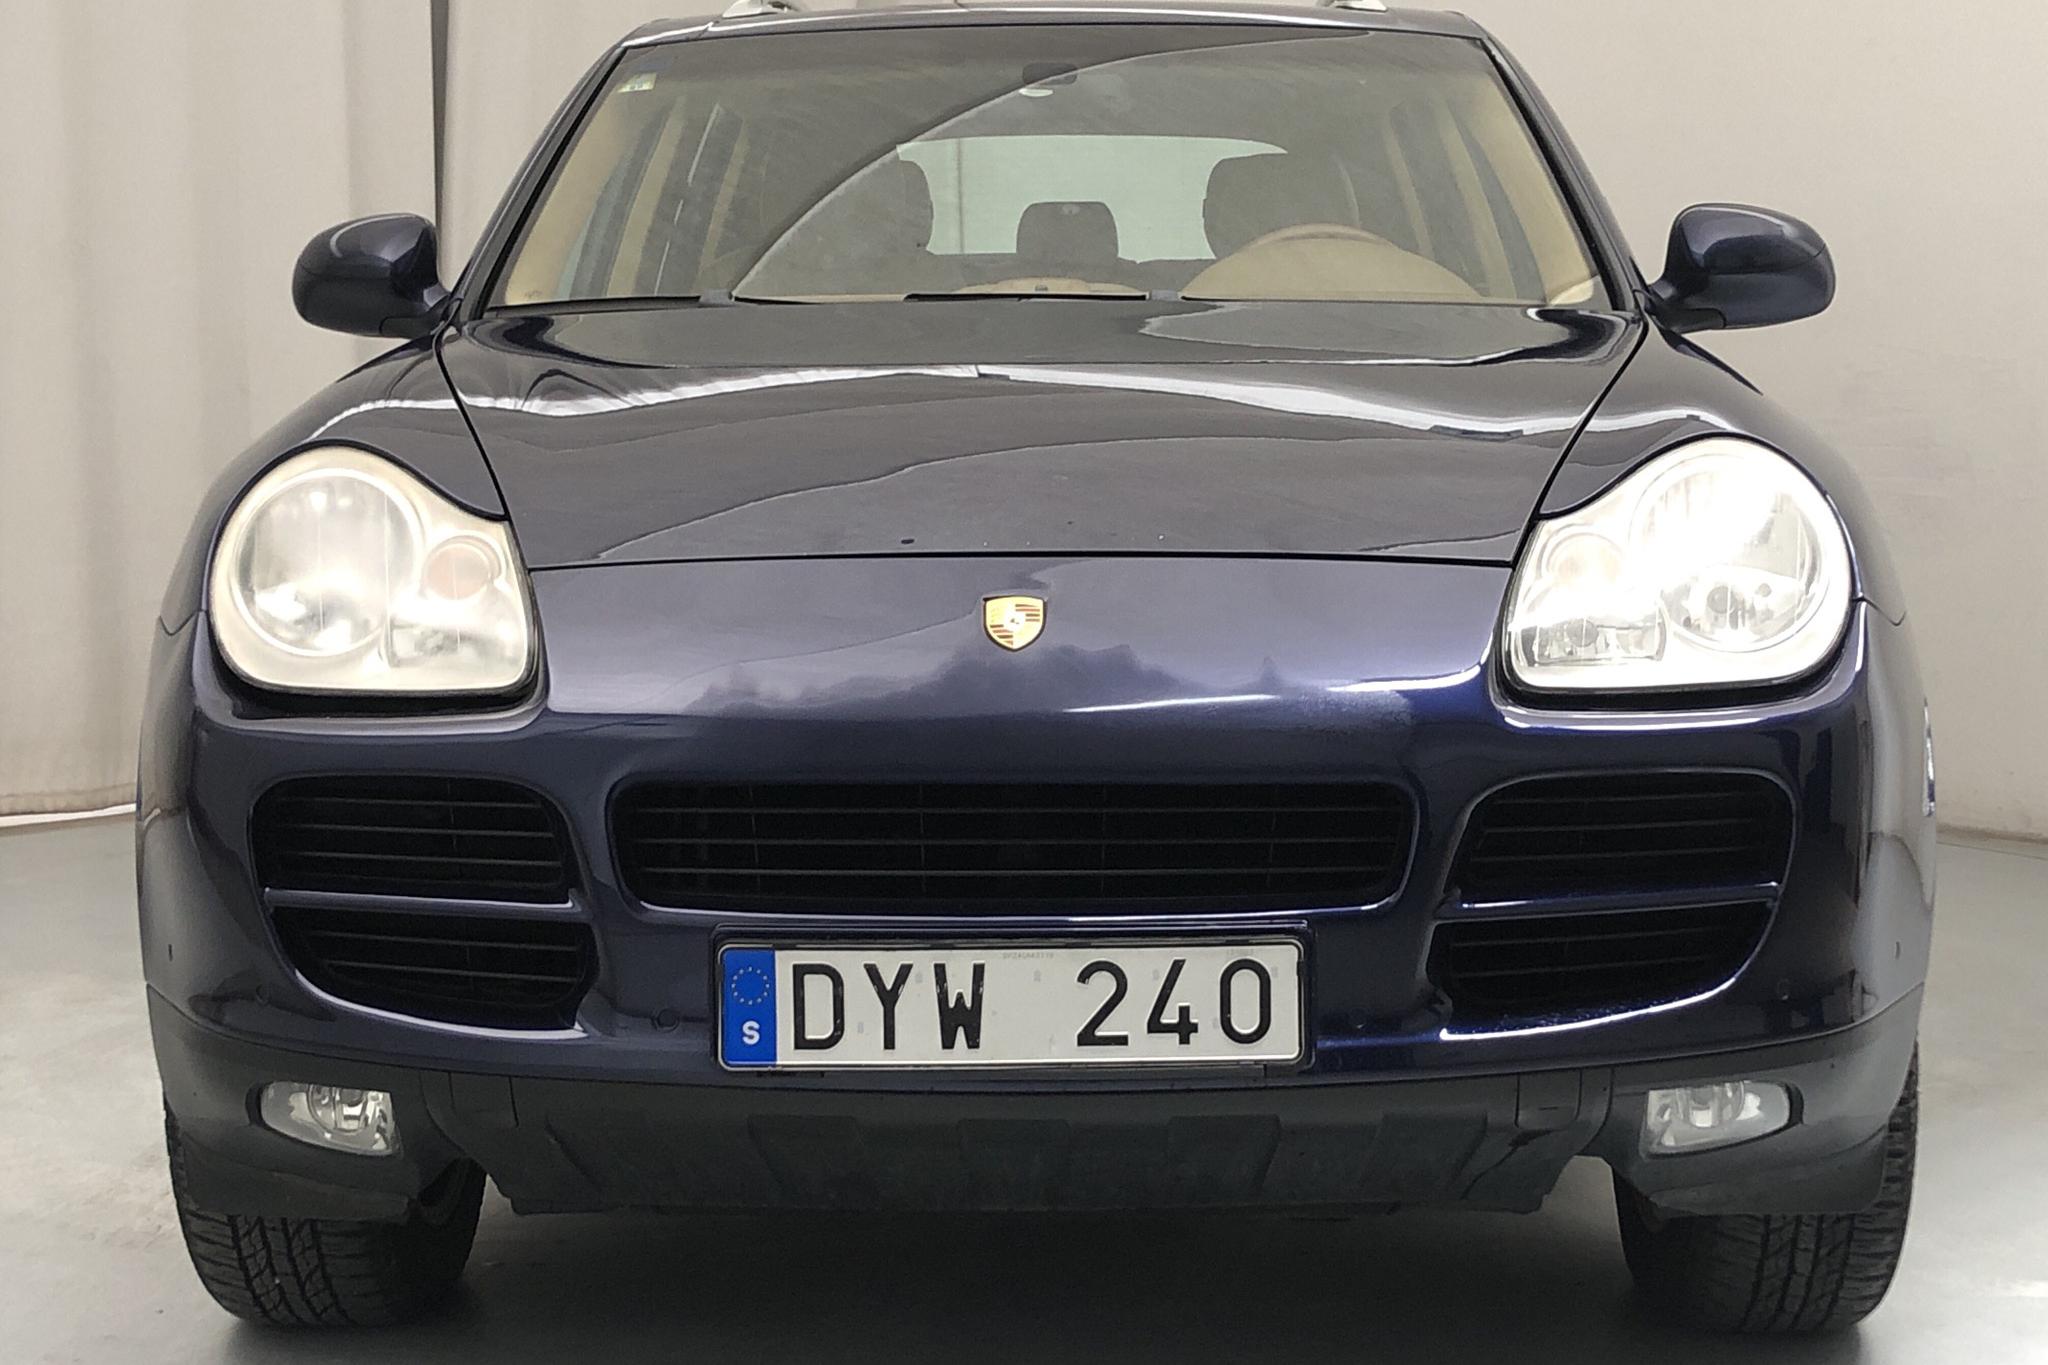 Porsche Cayenne S 4.5 (340hk) - 232 930 km - Automatic - blue - 2004